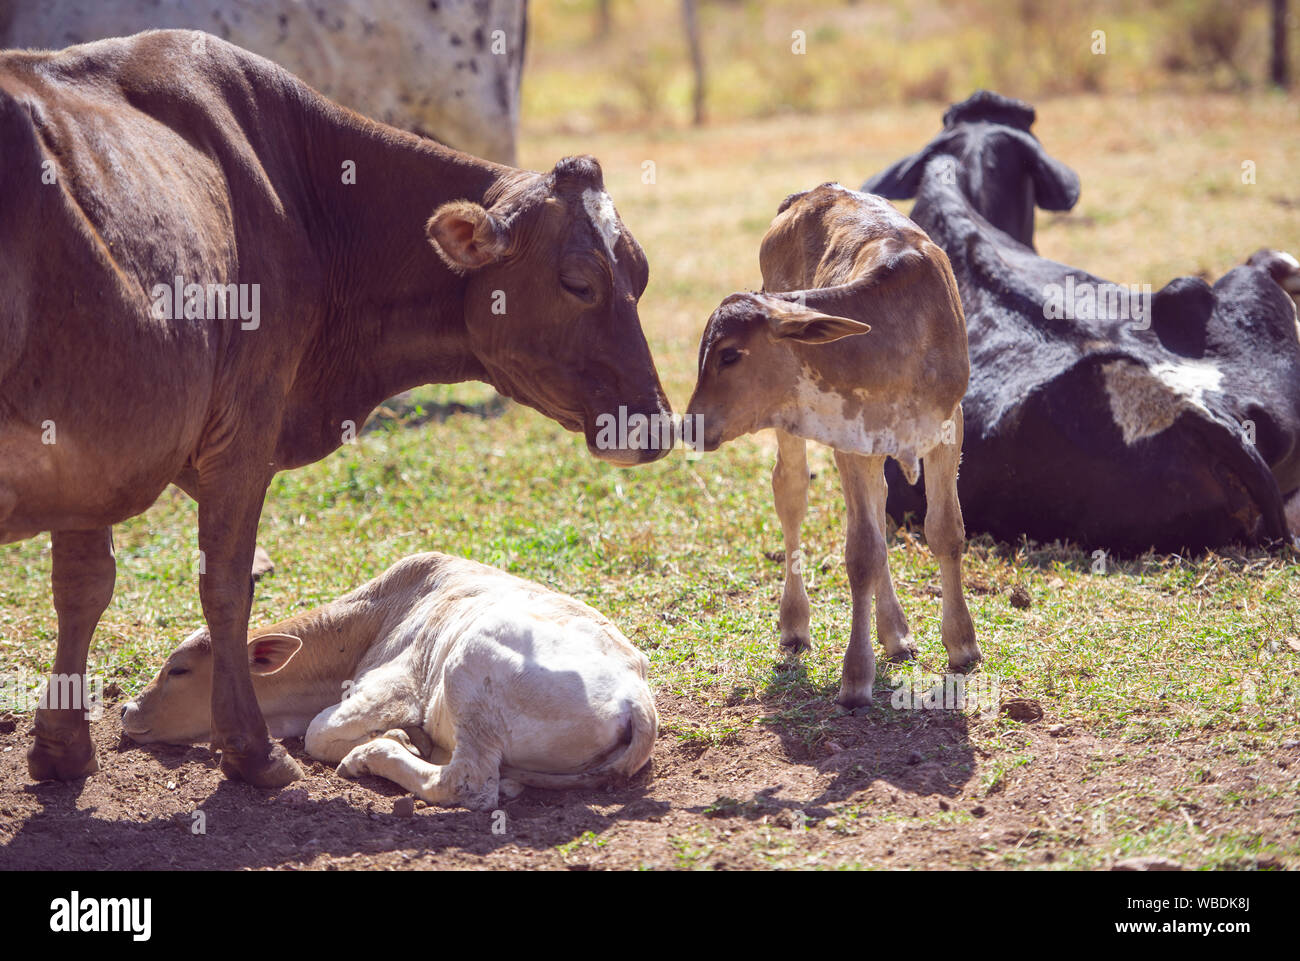 Immagine rurale. Vacca madre avendo cura di vitello neonato. Concetto di immagine di vita contadina. Foto Stock